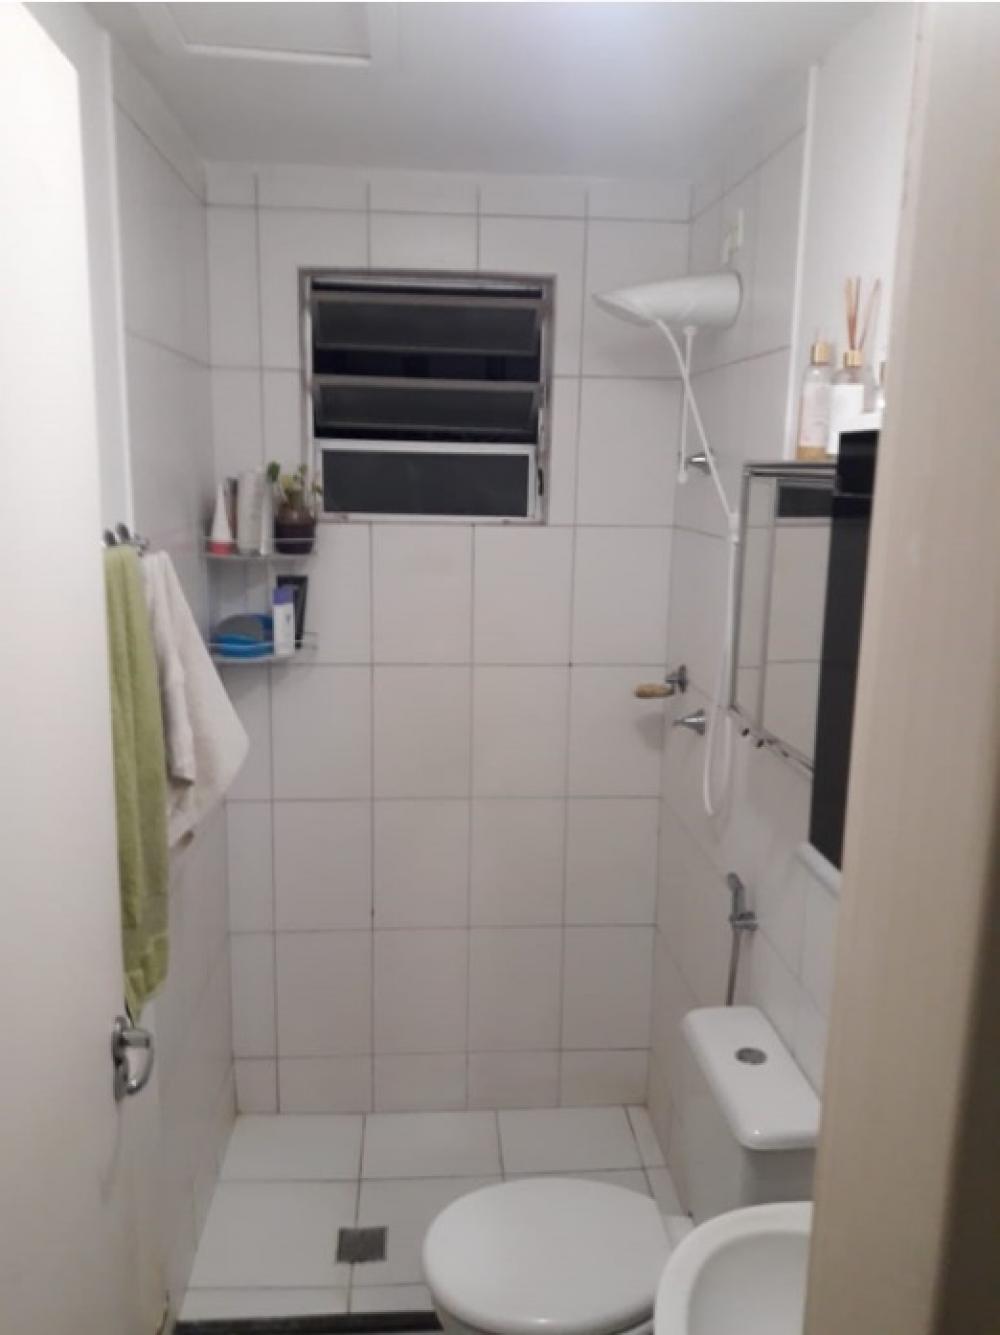 Comprar Apartamento / Padrão em São José do Rio Preto R$ 180.000,00 - Foto 2